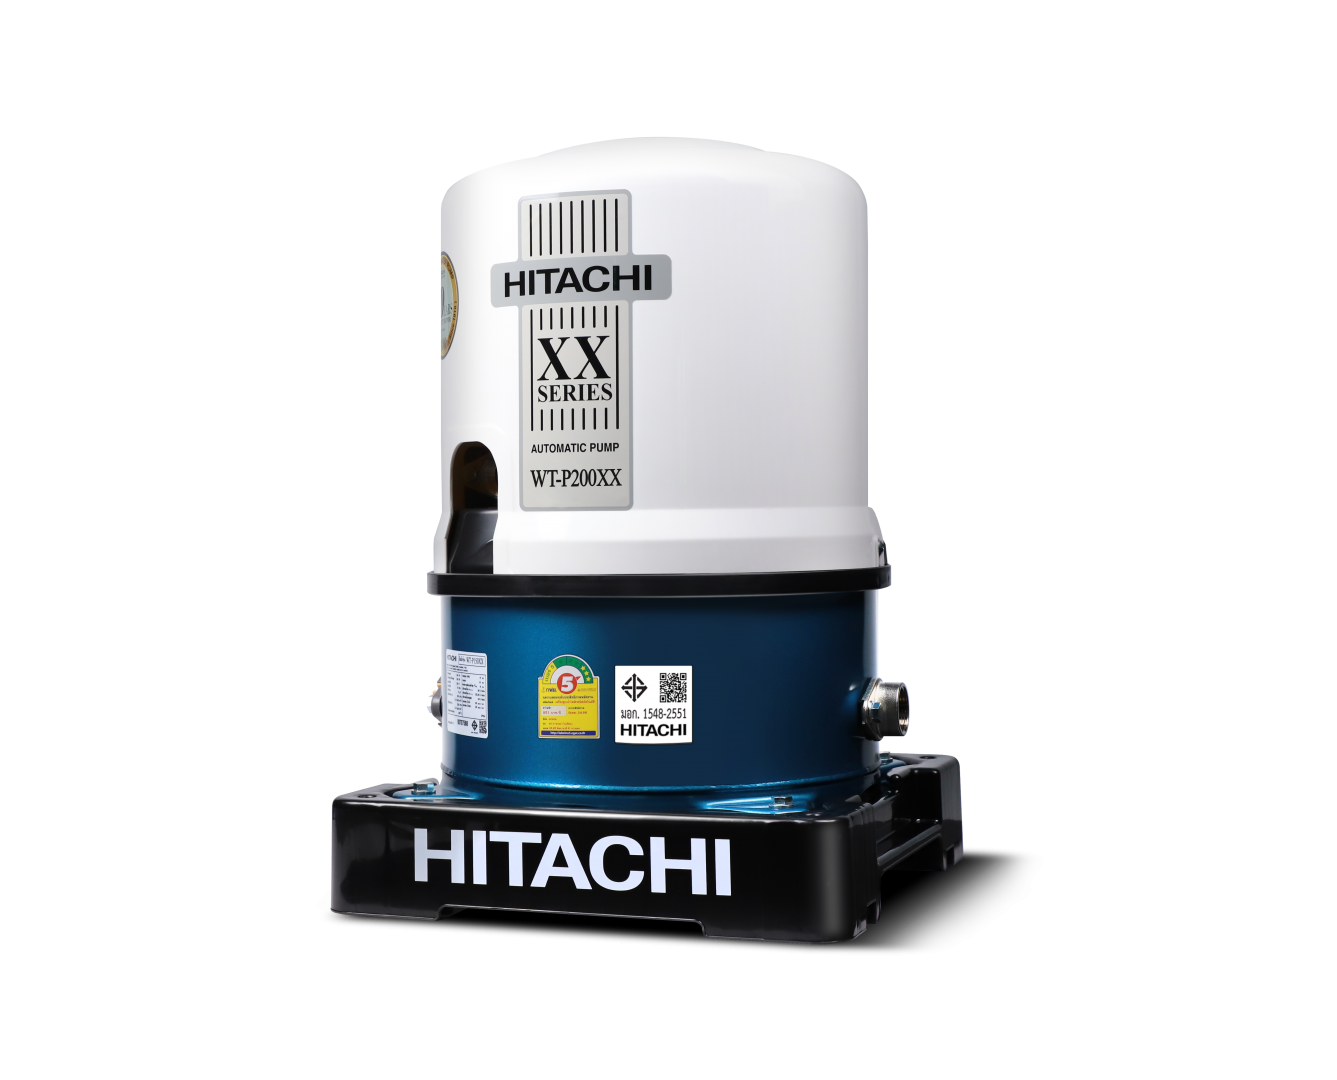 ปั๊มน้ำอัตโนมัติ 200w. HITACHI WT-P200XX (ใหม่)